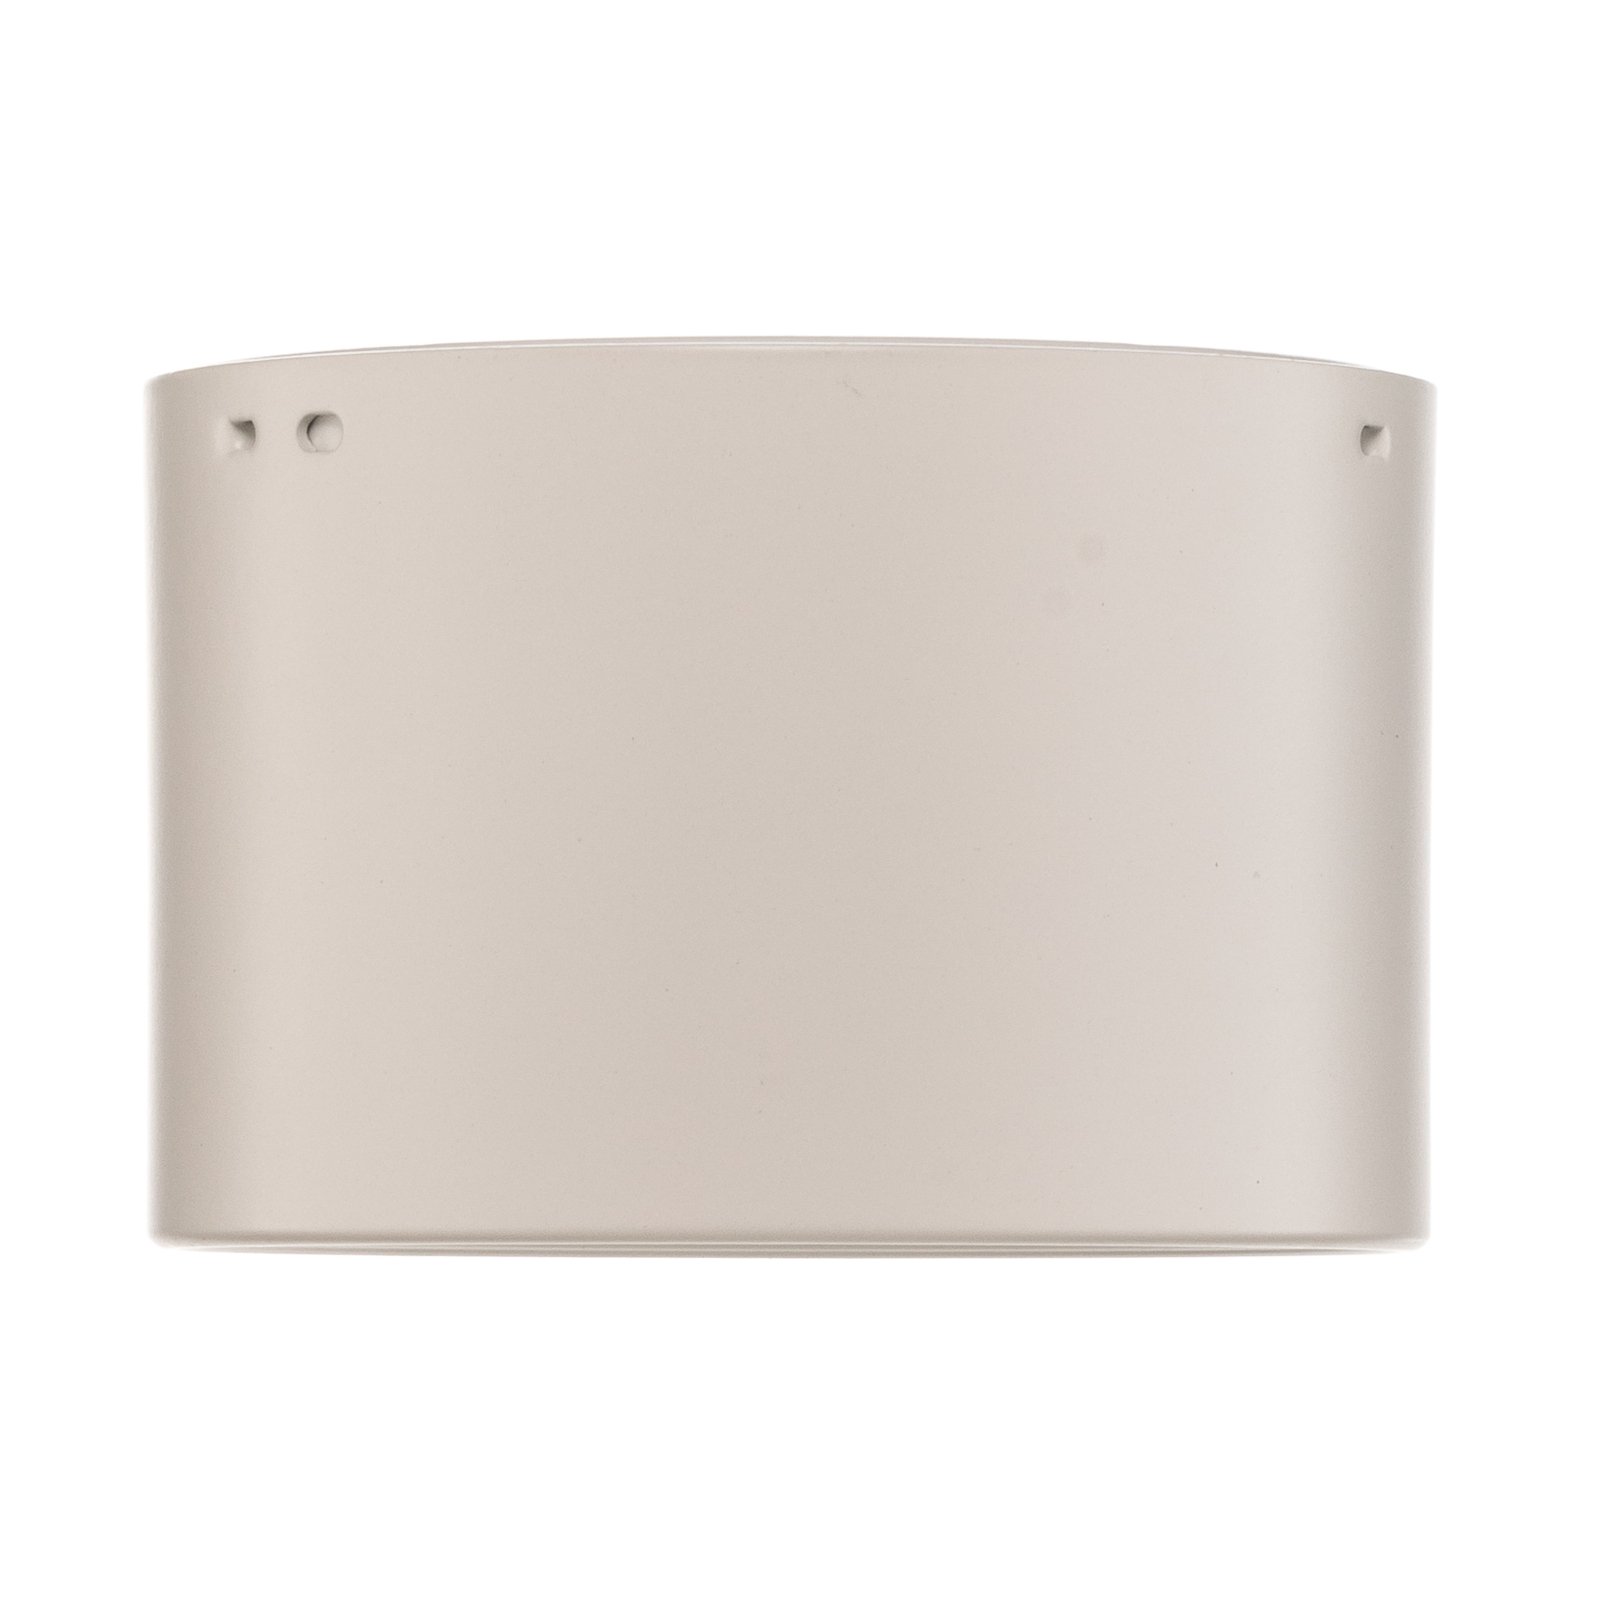 LED-Downlight Ita in Weiß mit Diffusor, Ø 12 cm